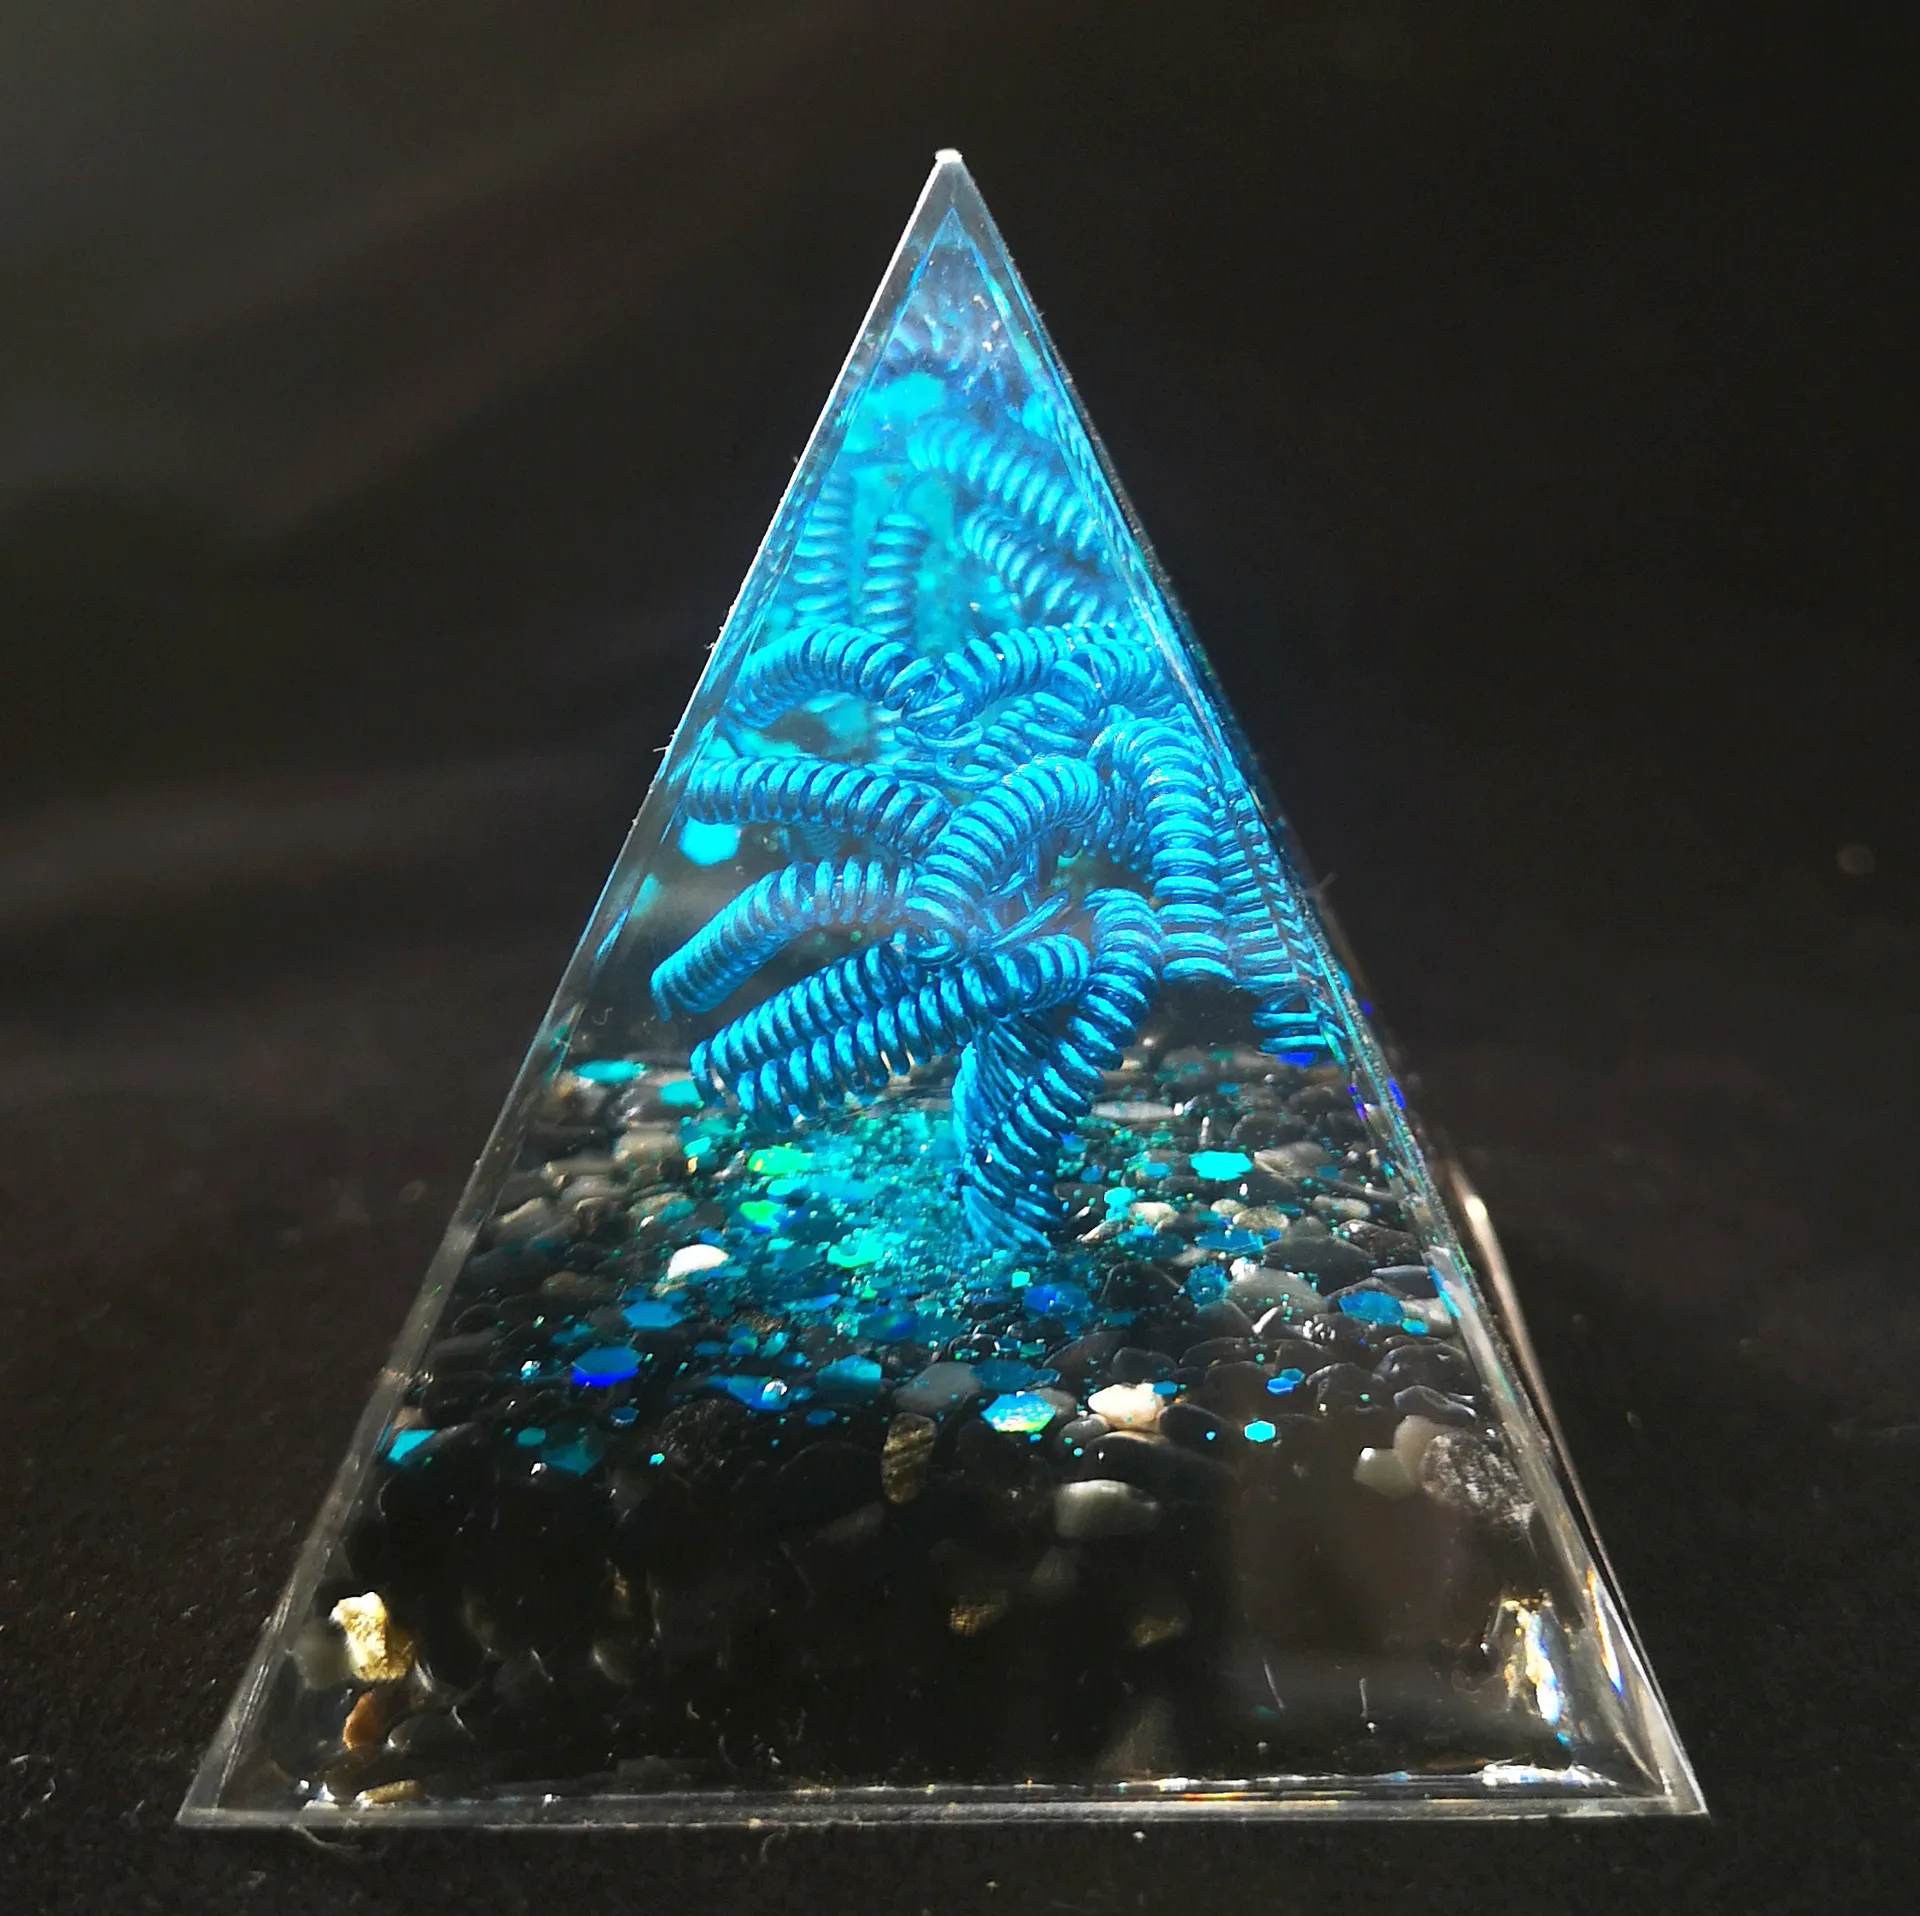 Piramide di Ogan Piramide di Ghiaia di Cristallo Tessuto a Mano Filo di Rame Albero Artigianato Arredamento Per La Casa